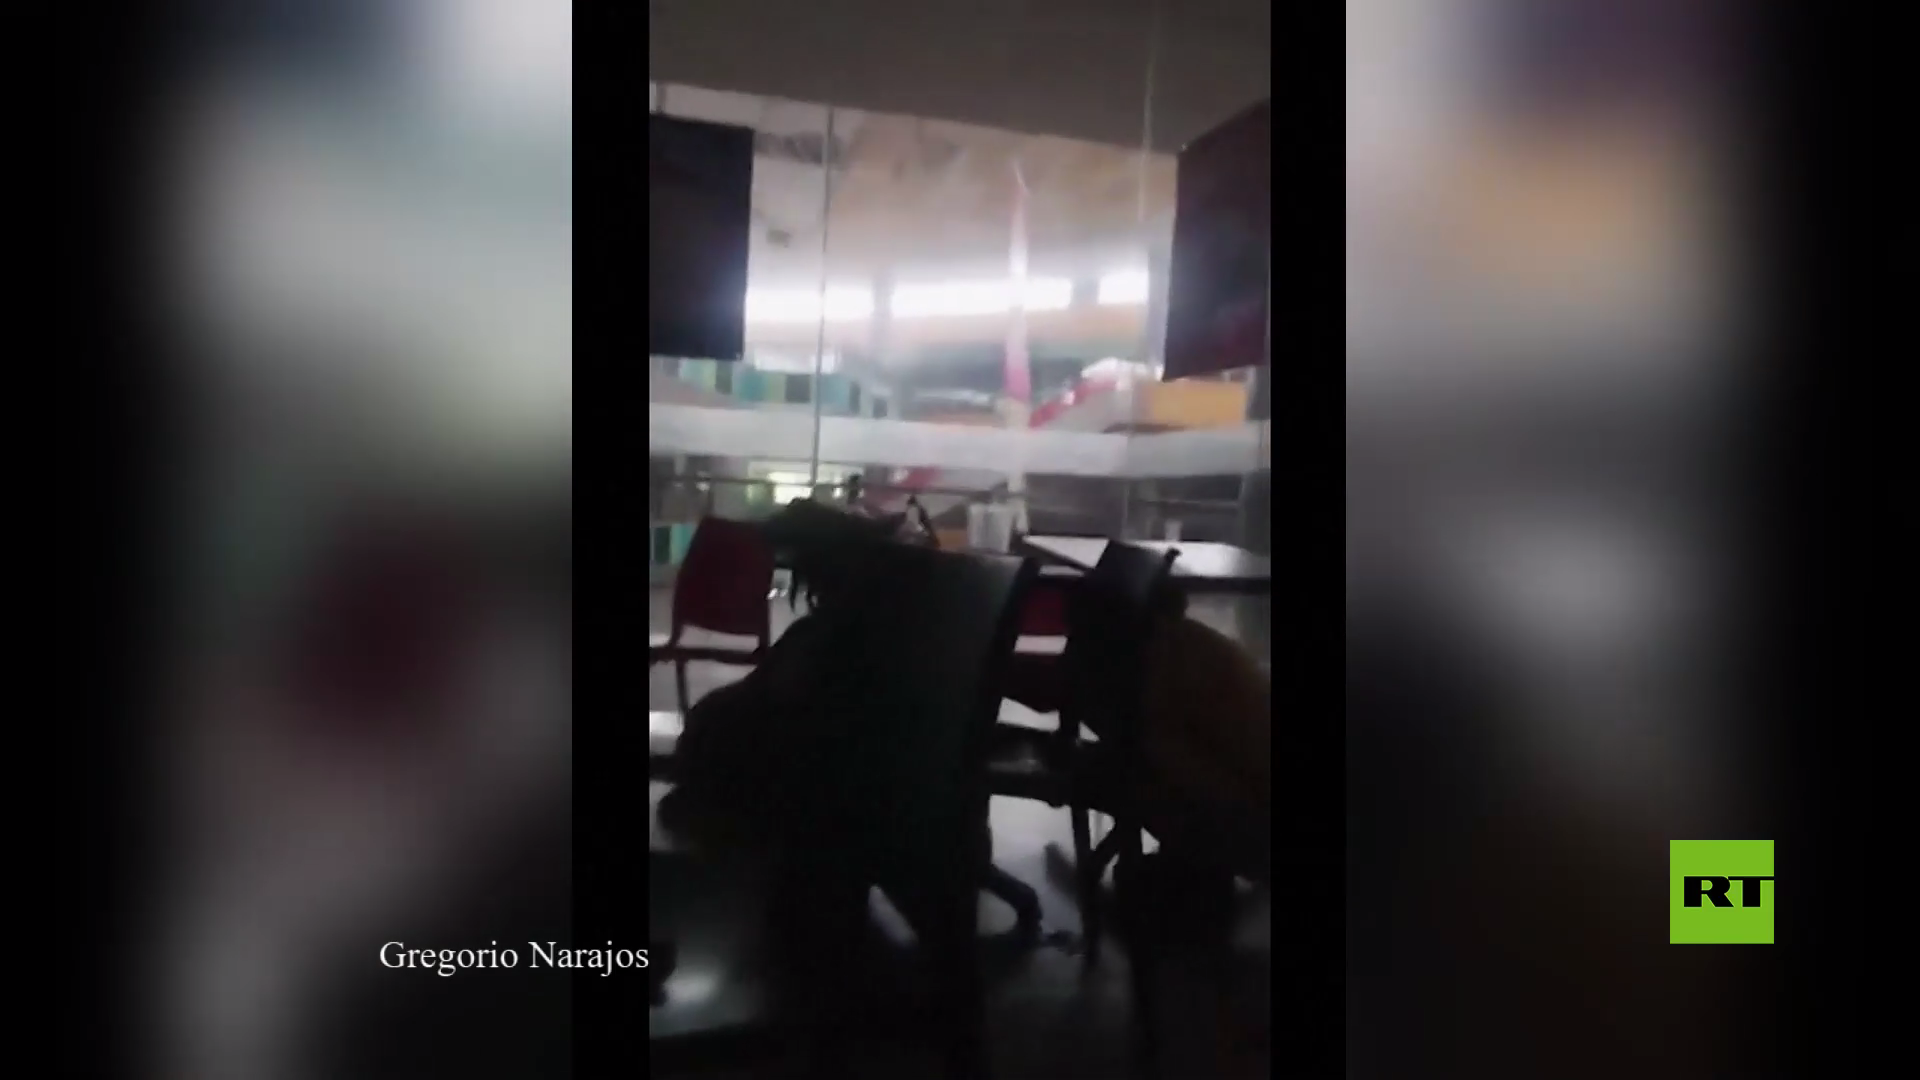 كاميرا تسجل سقوط أسقف في مركز تجاري لحظة هزة أرضية قوية في الفلبين